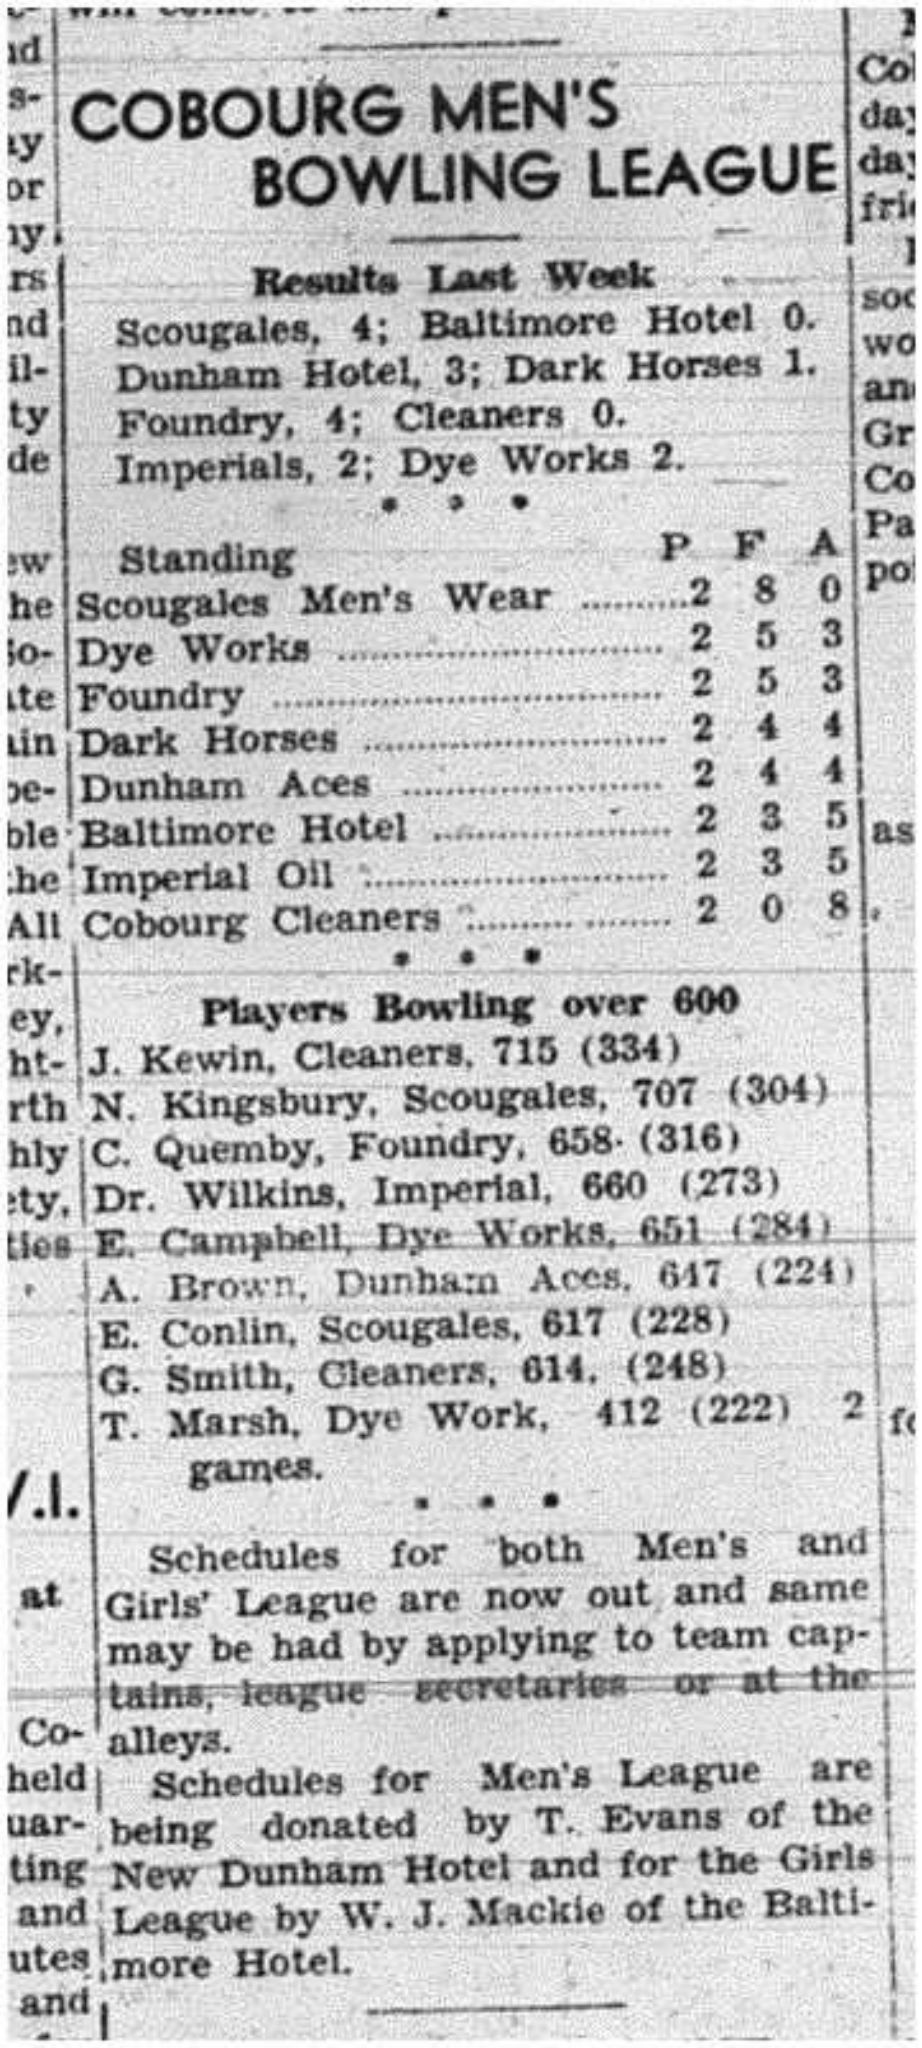 1943-11-18 Bowling - Men